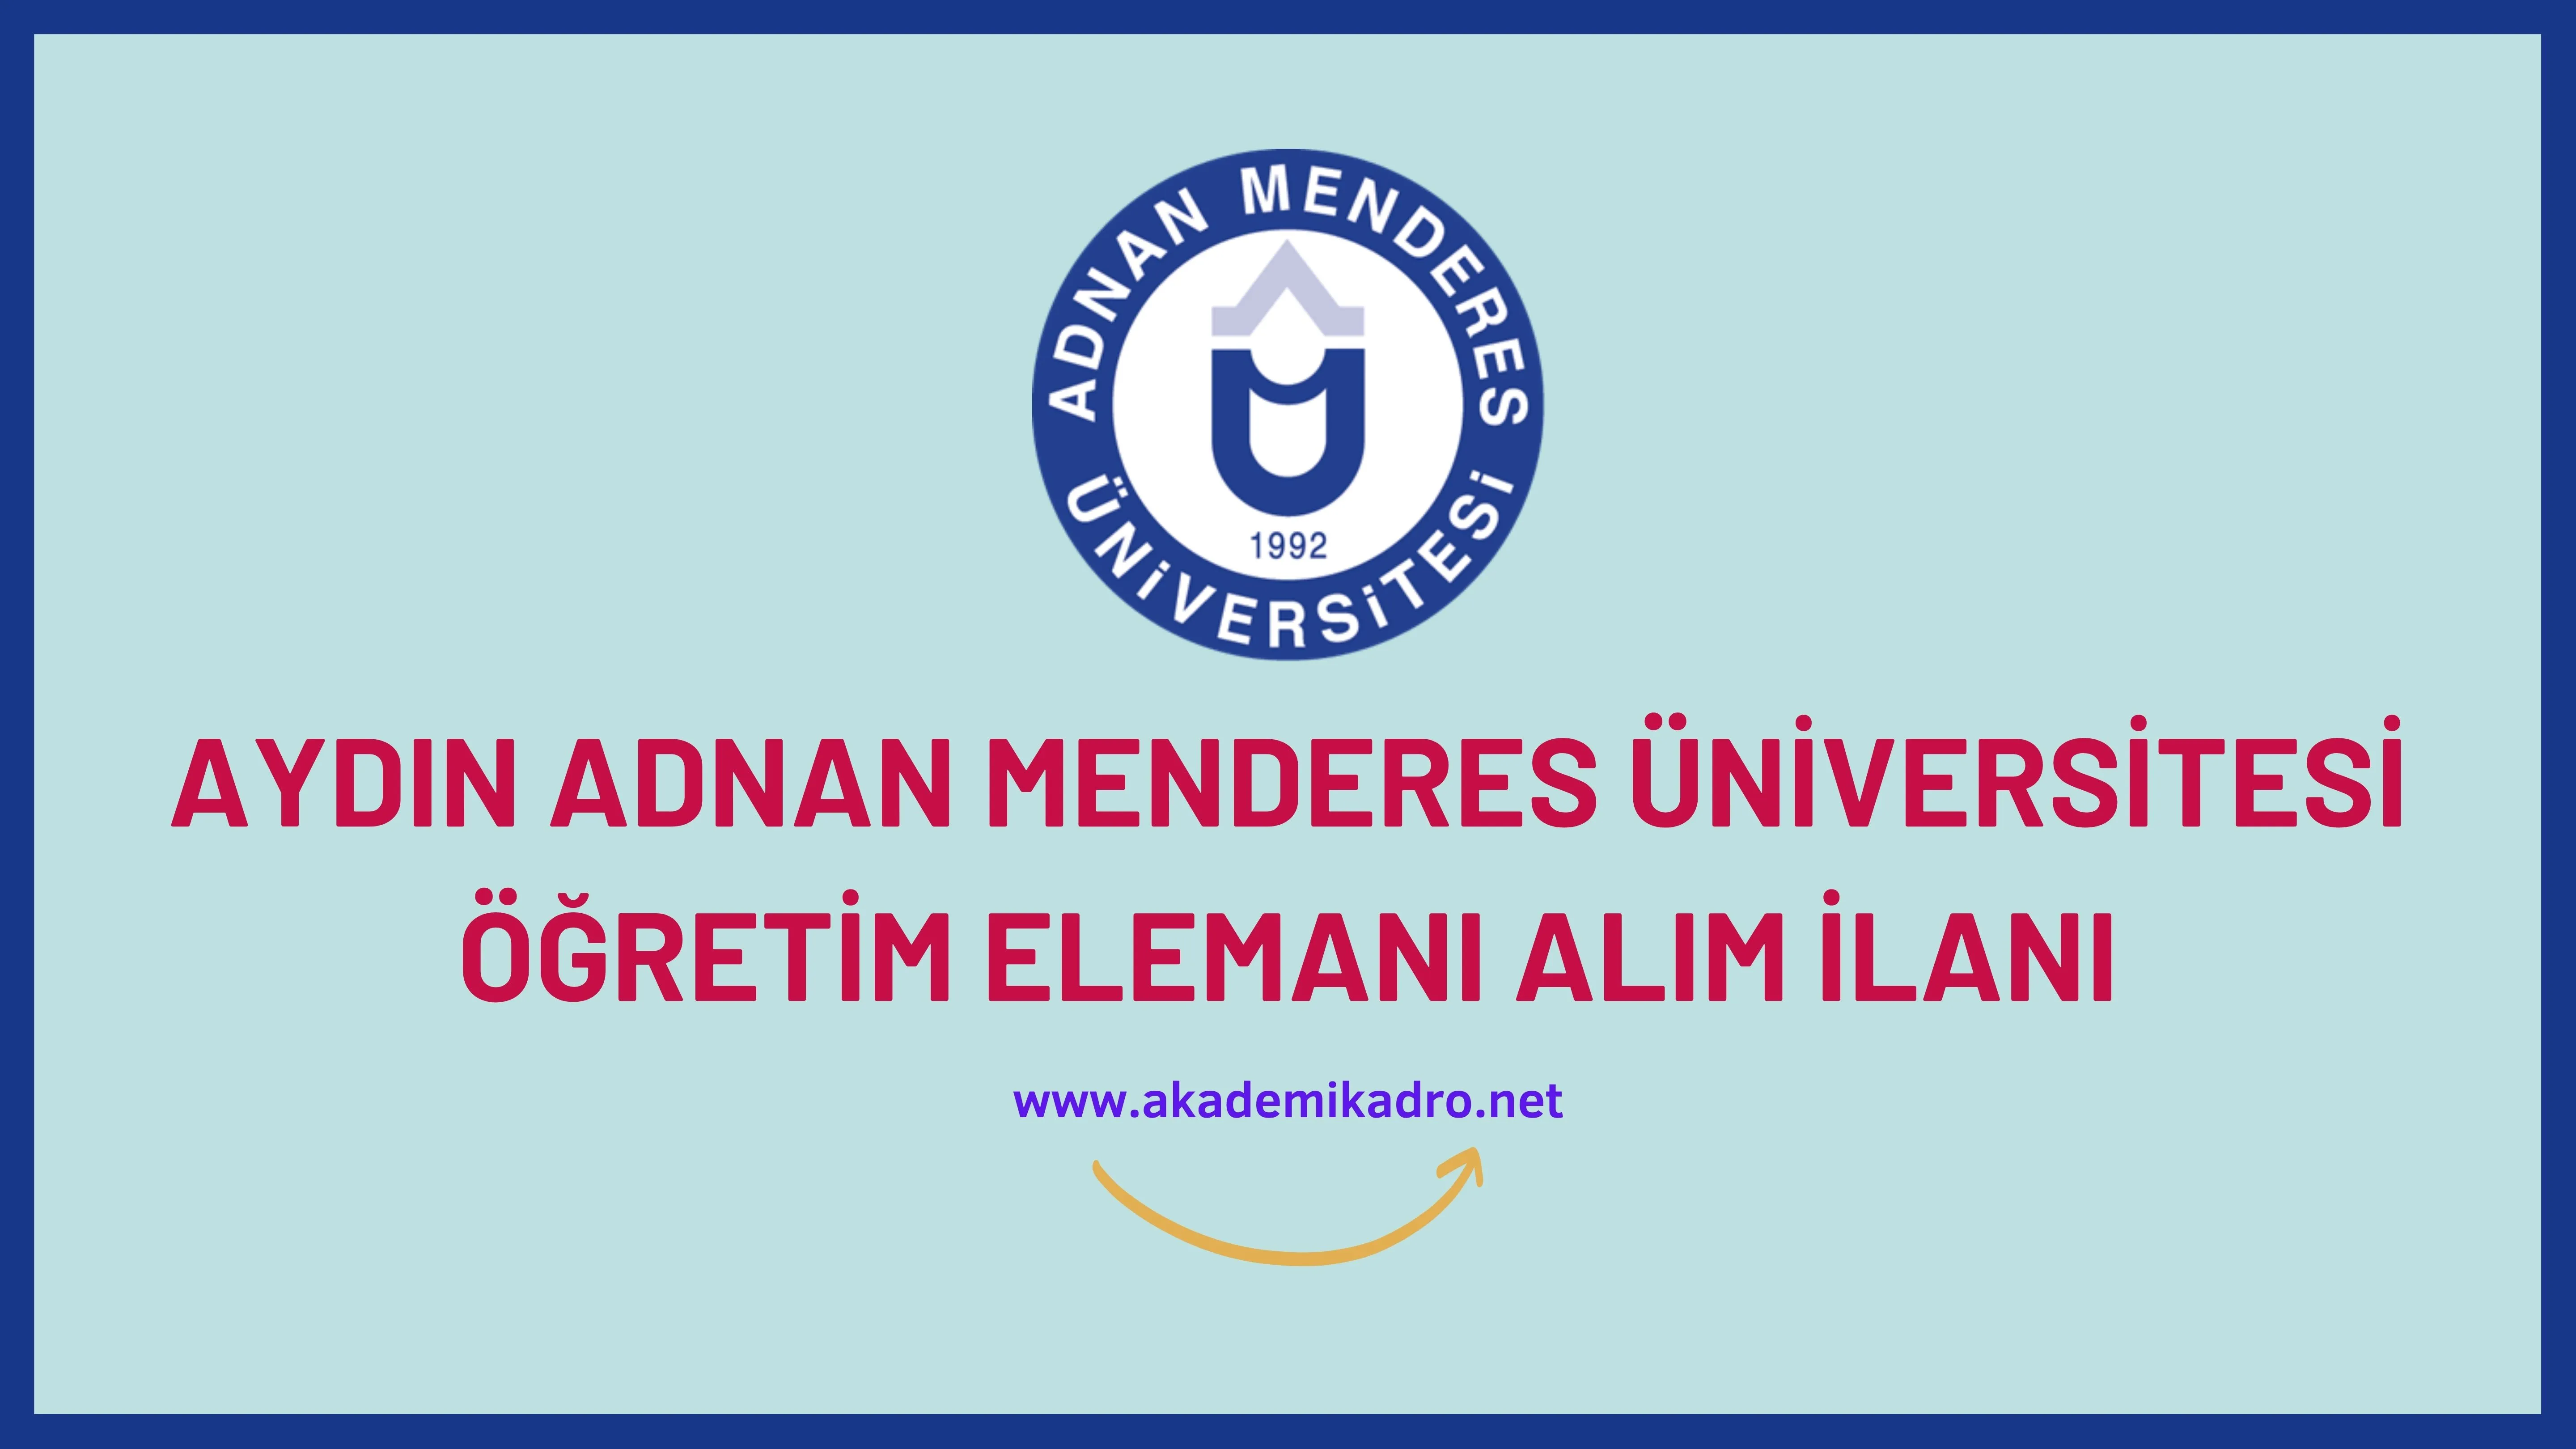 Aydın Adnan Menderes Üniversitesi 24 öğretim üyesi ve 6 öğretim görevlisi alacaktır.